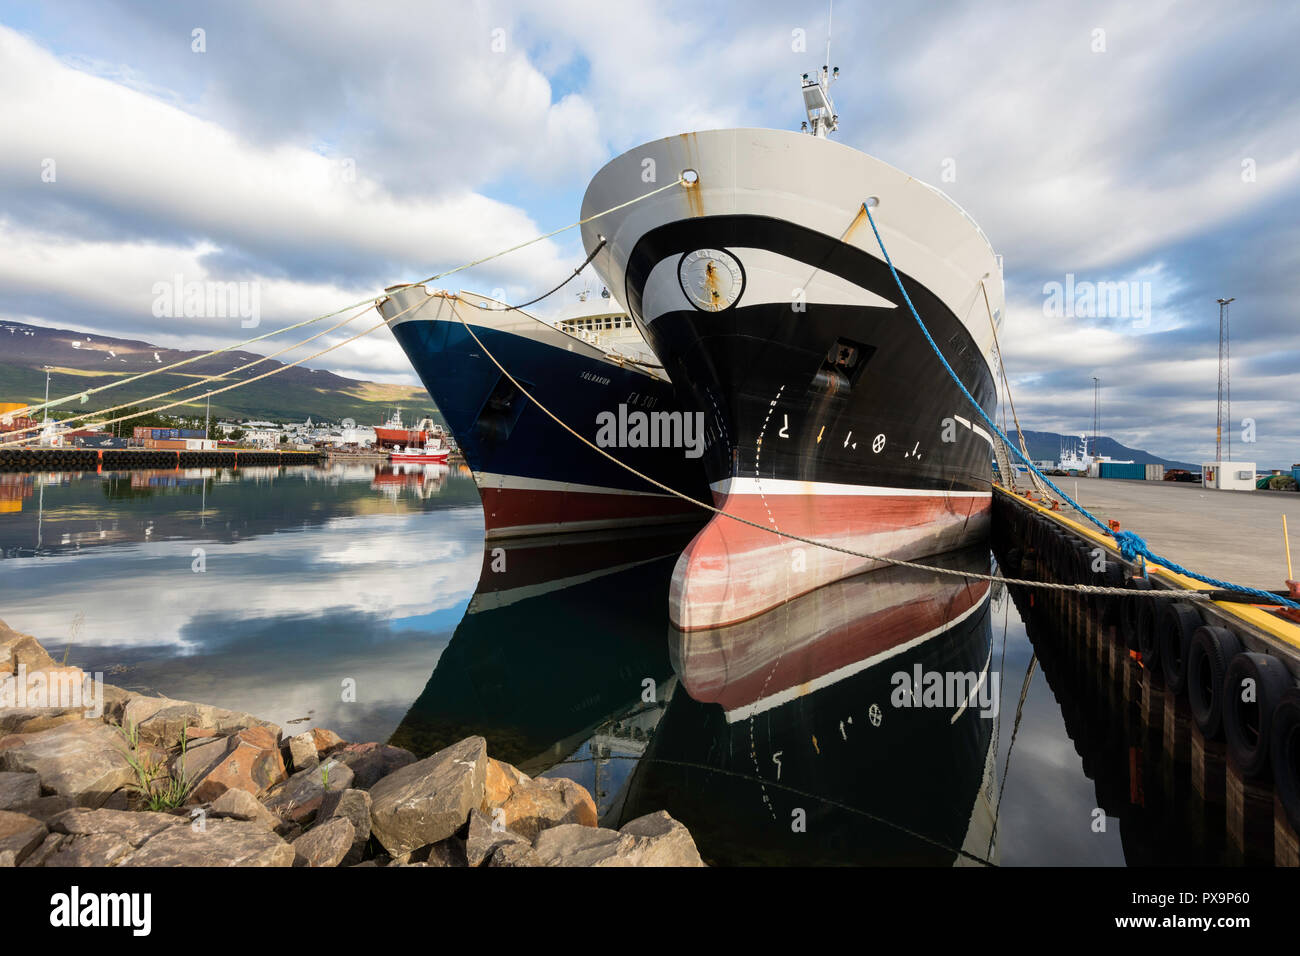 La pesca comercial y el puerto de embarque de Akureyri, frente a la costa norte de Islandia. Foto de stock